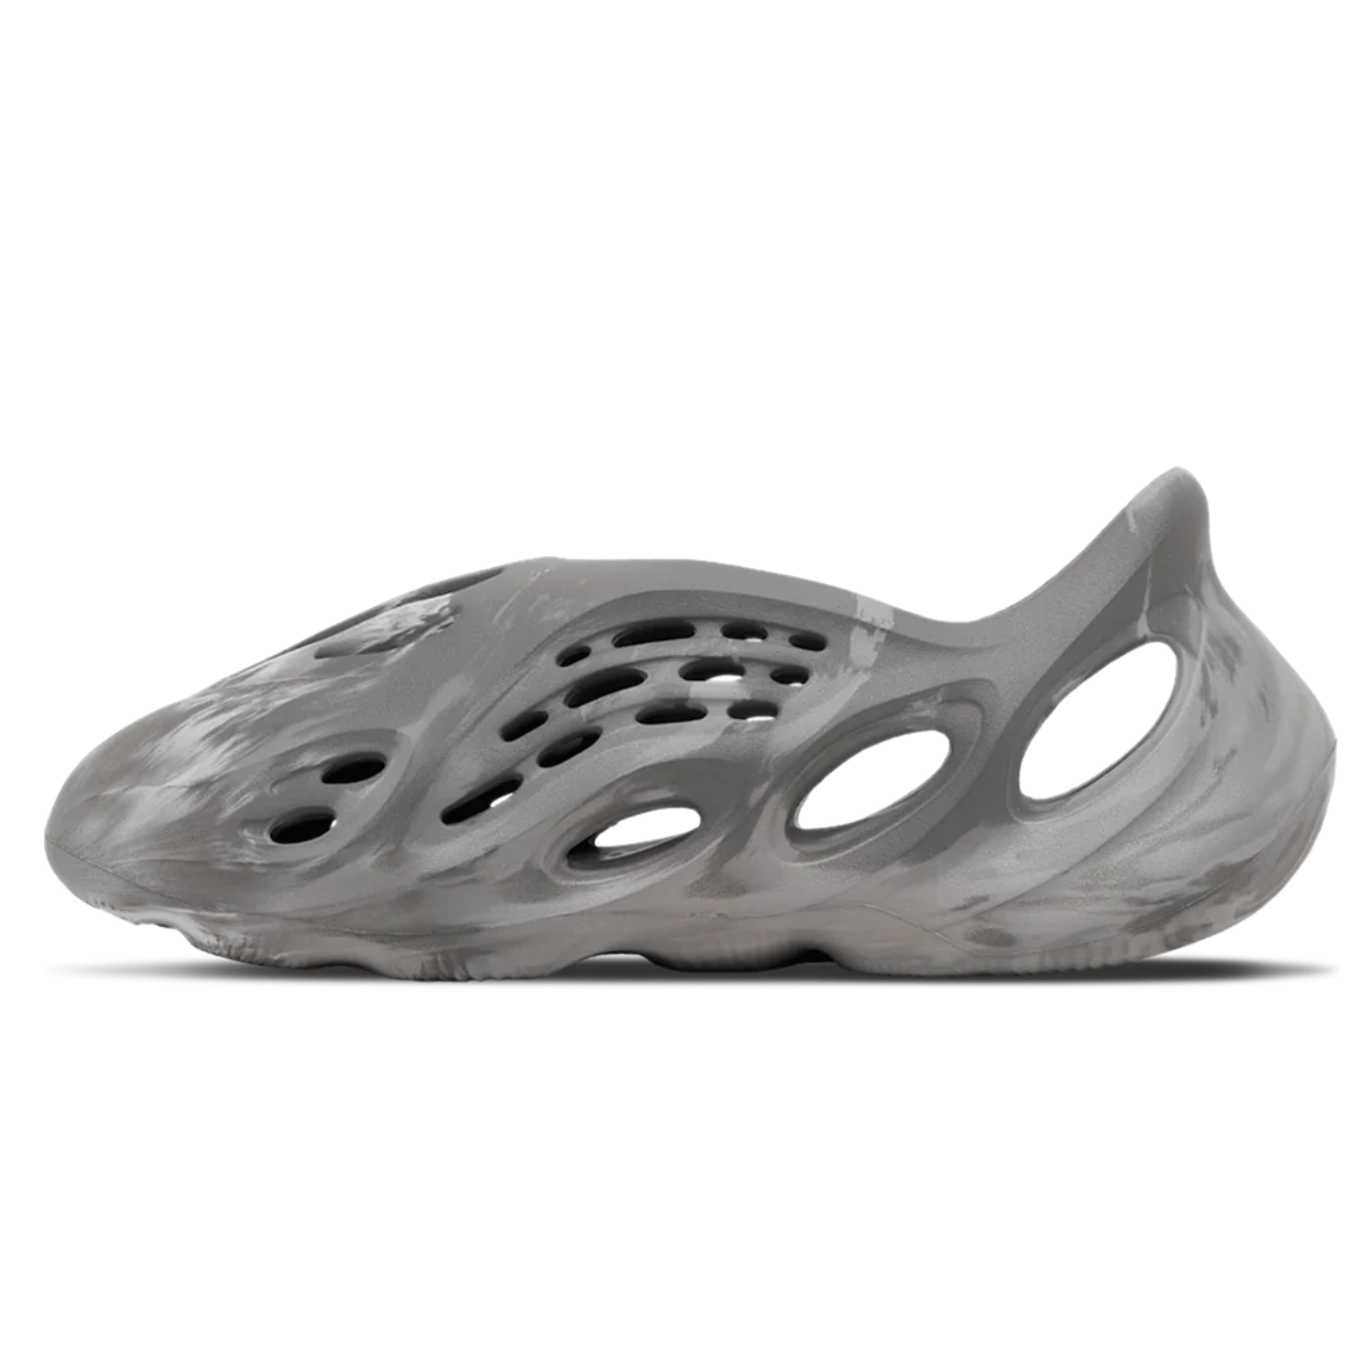 adidas Yeezy Foam Runner 'MX Granite'